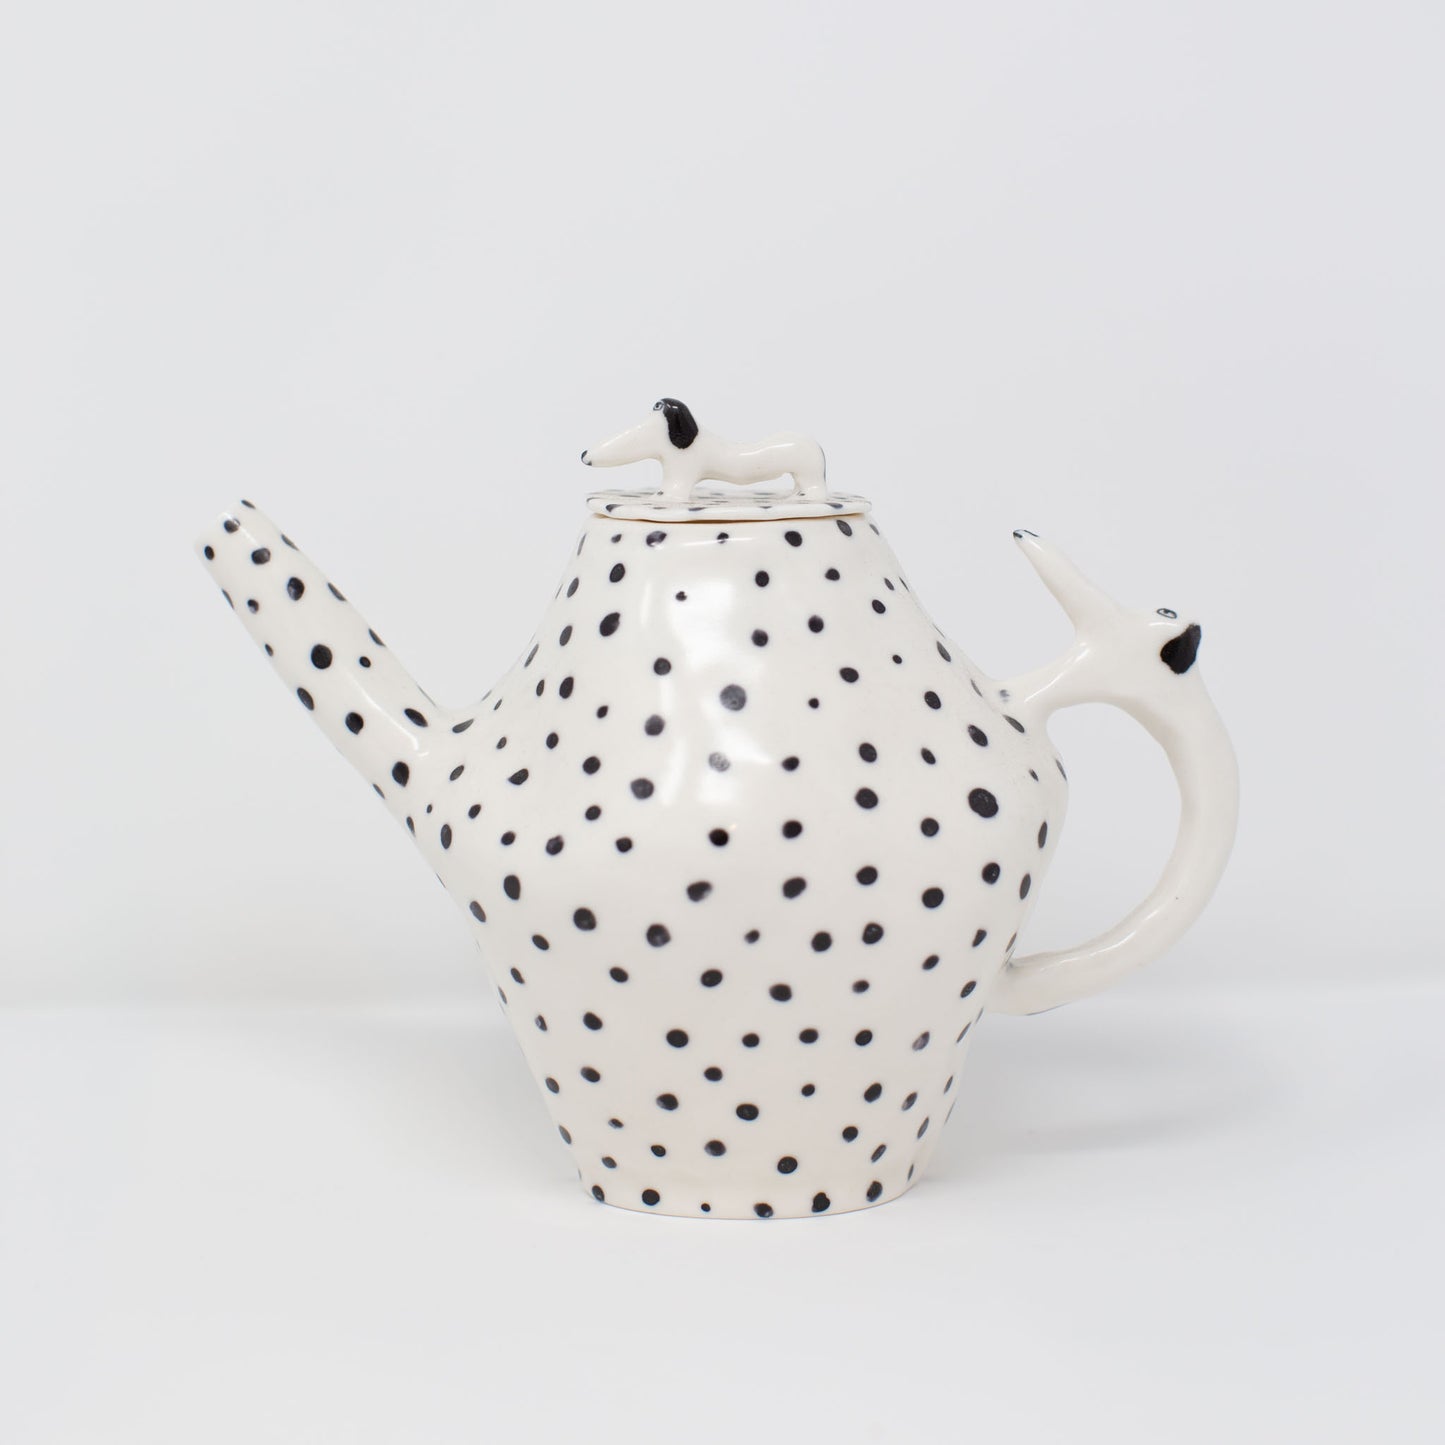 Polka Dot Dog Teapot by Eleonor Bostrom